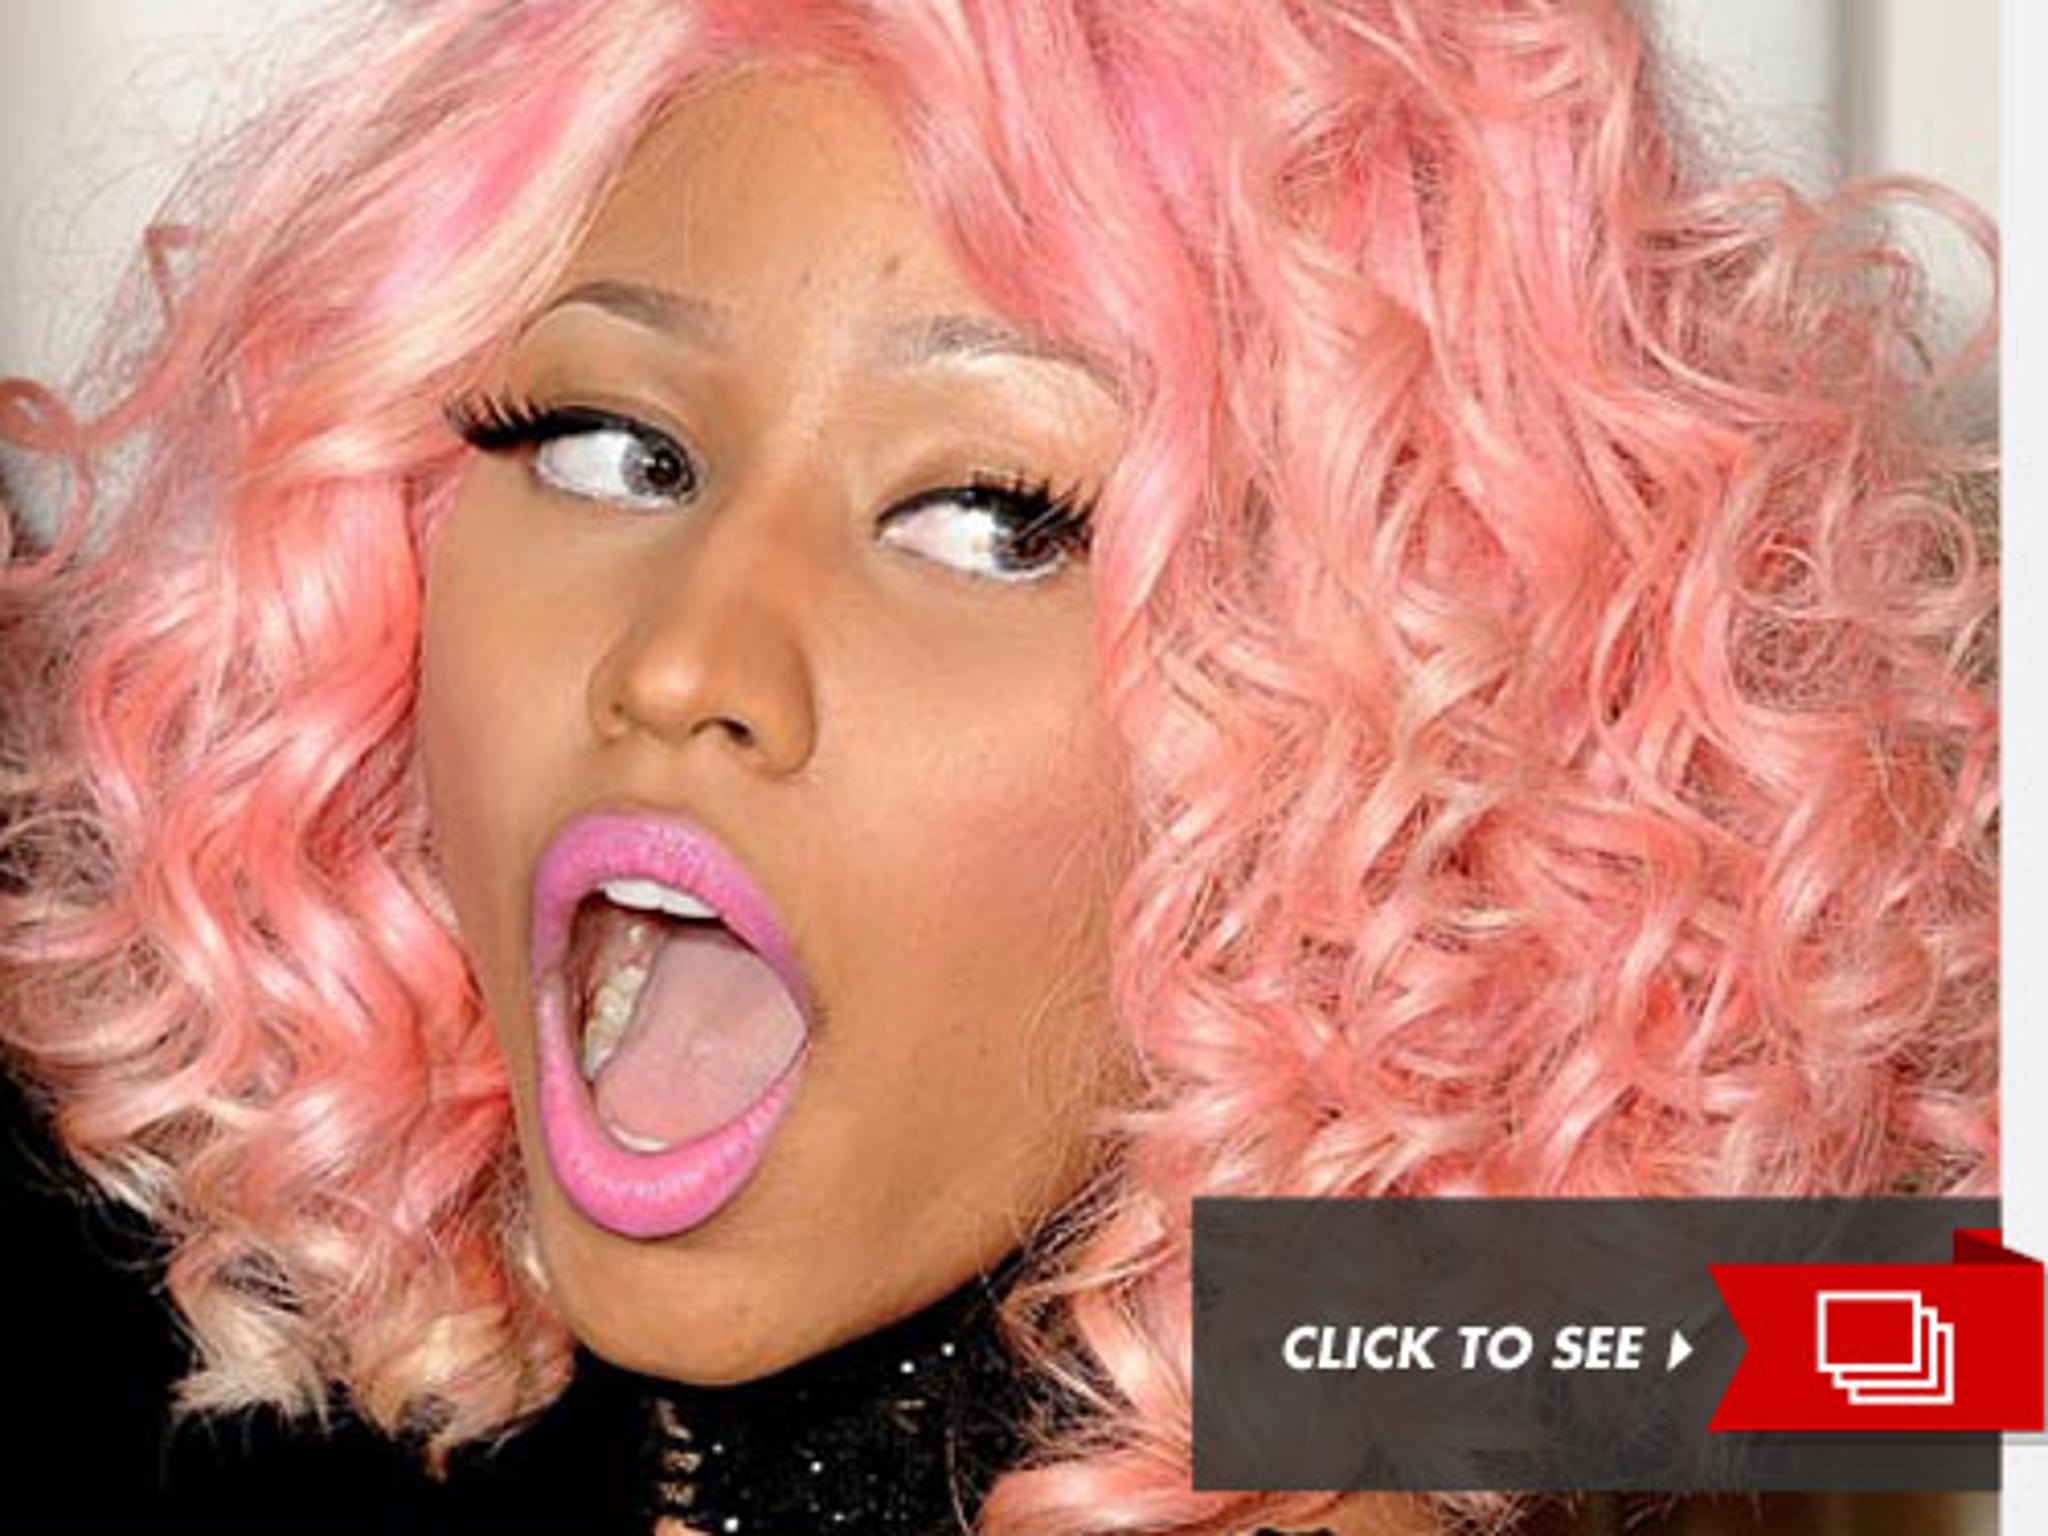 Nicki Minaj Free Porn - Nicki Minaj -- No Makeup, No Wig! [PHOTO]